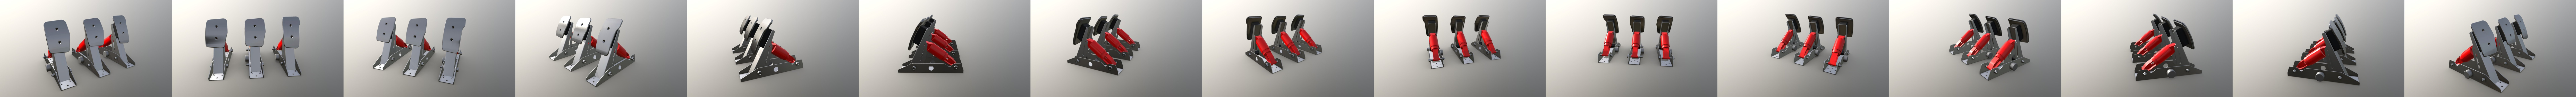 Logitech G25/G27 Pedals (no cover) - Download Free 3D model by Flikd Design  (@Flikd_Design) [6b3ae68]